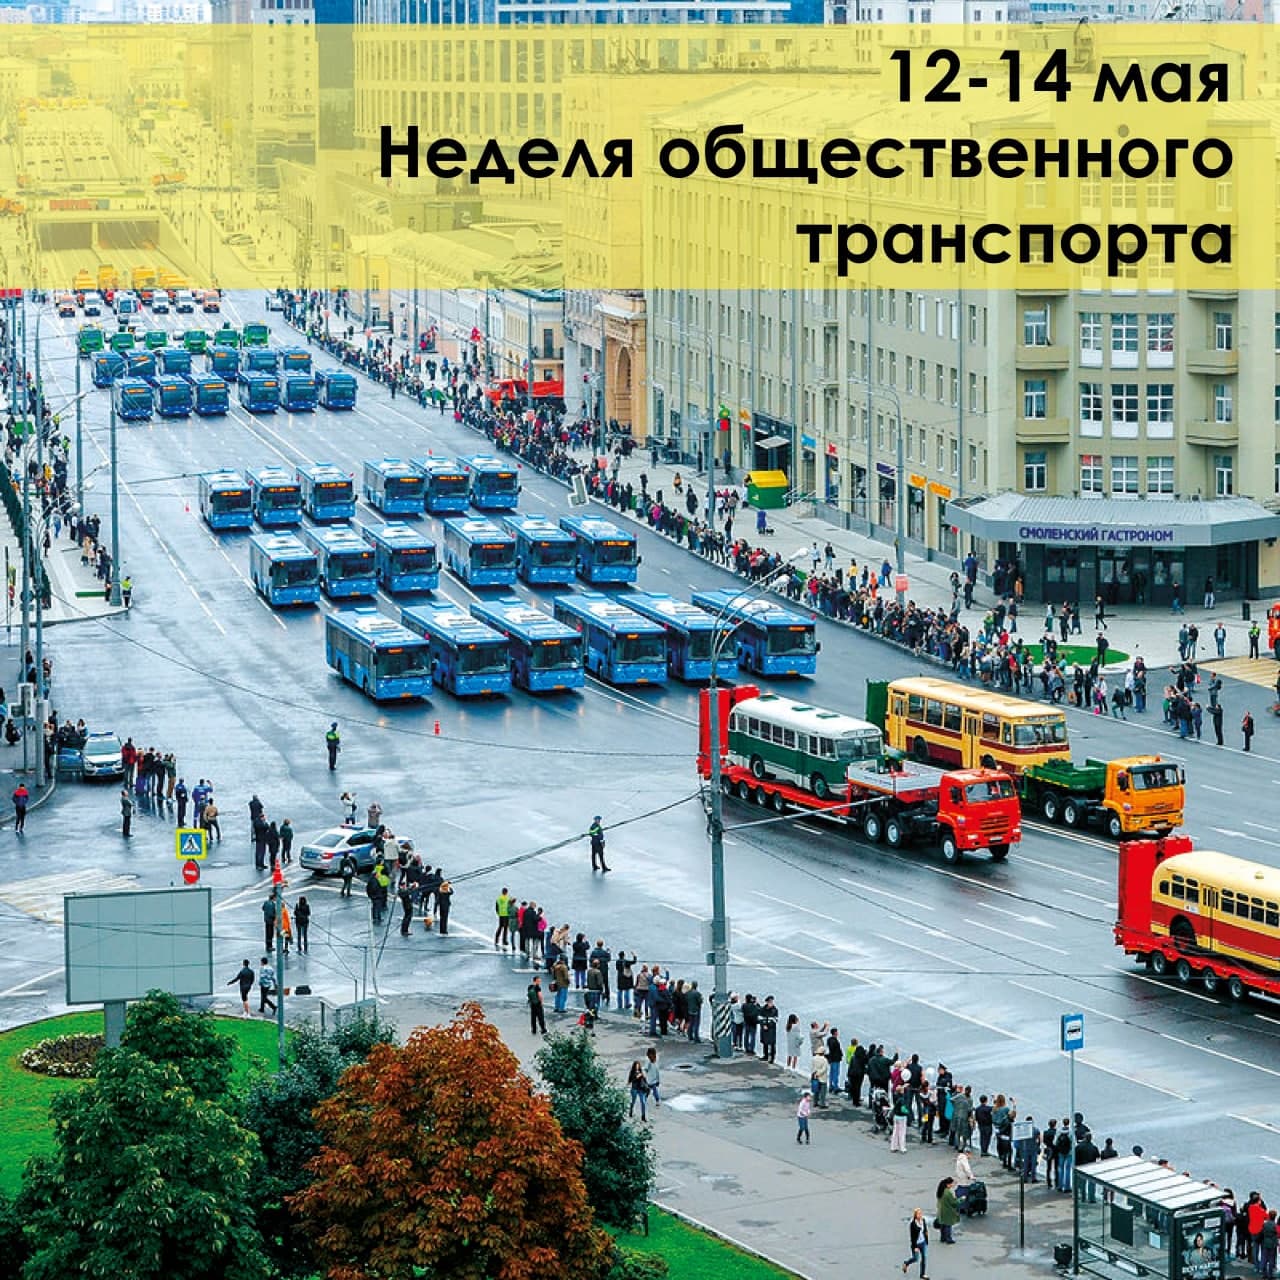 Российская неделя общественного транспорта